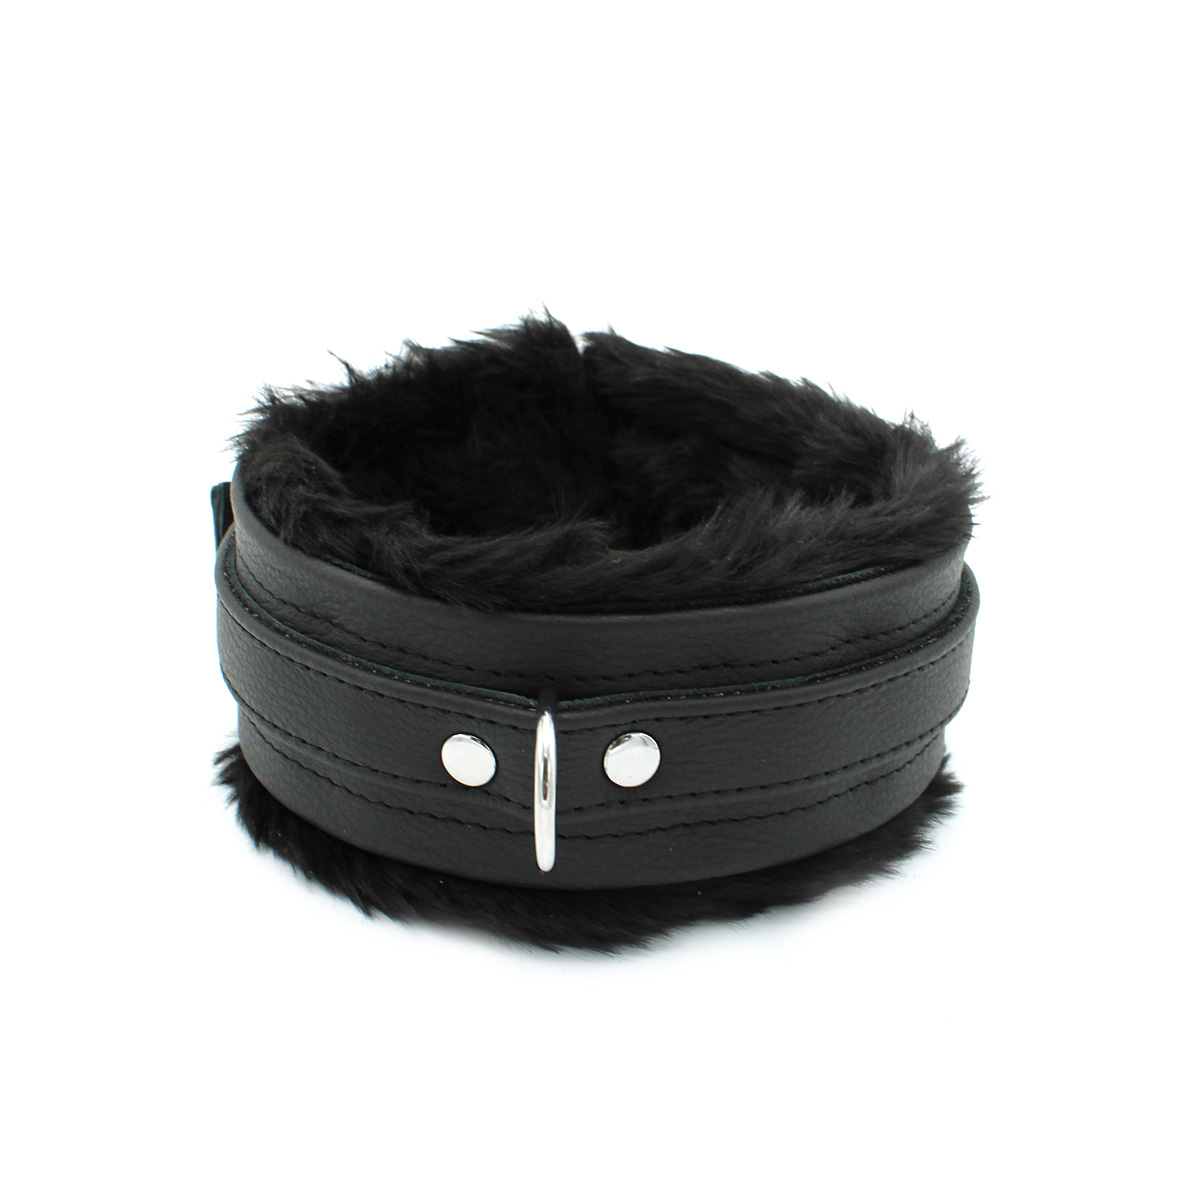 Fluffy-Inside-Black-Leather-Collar-134-KIO-0343-2